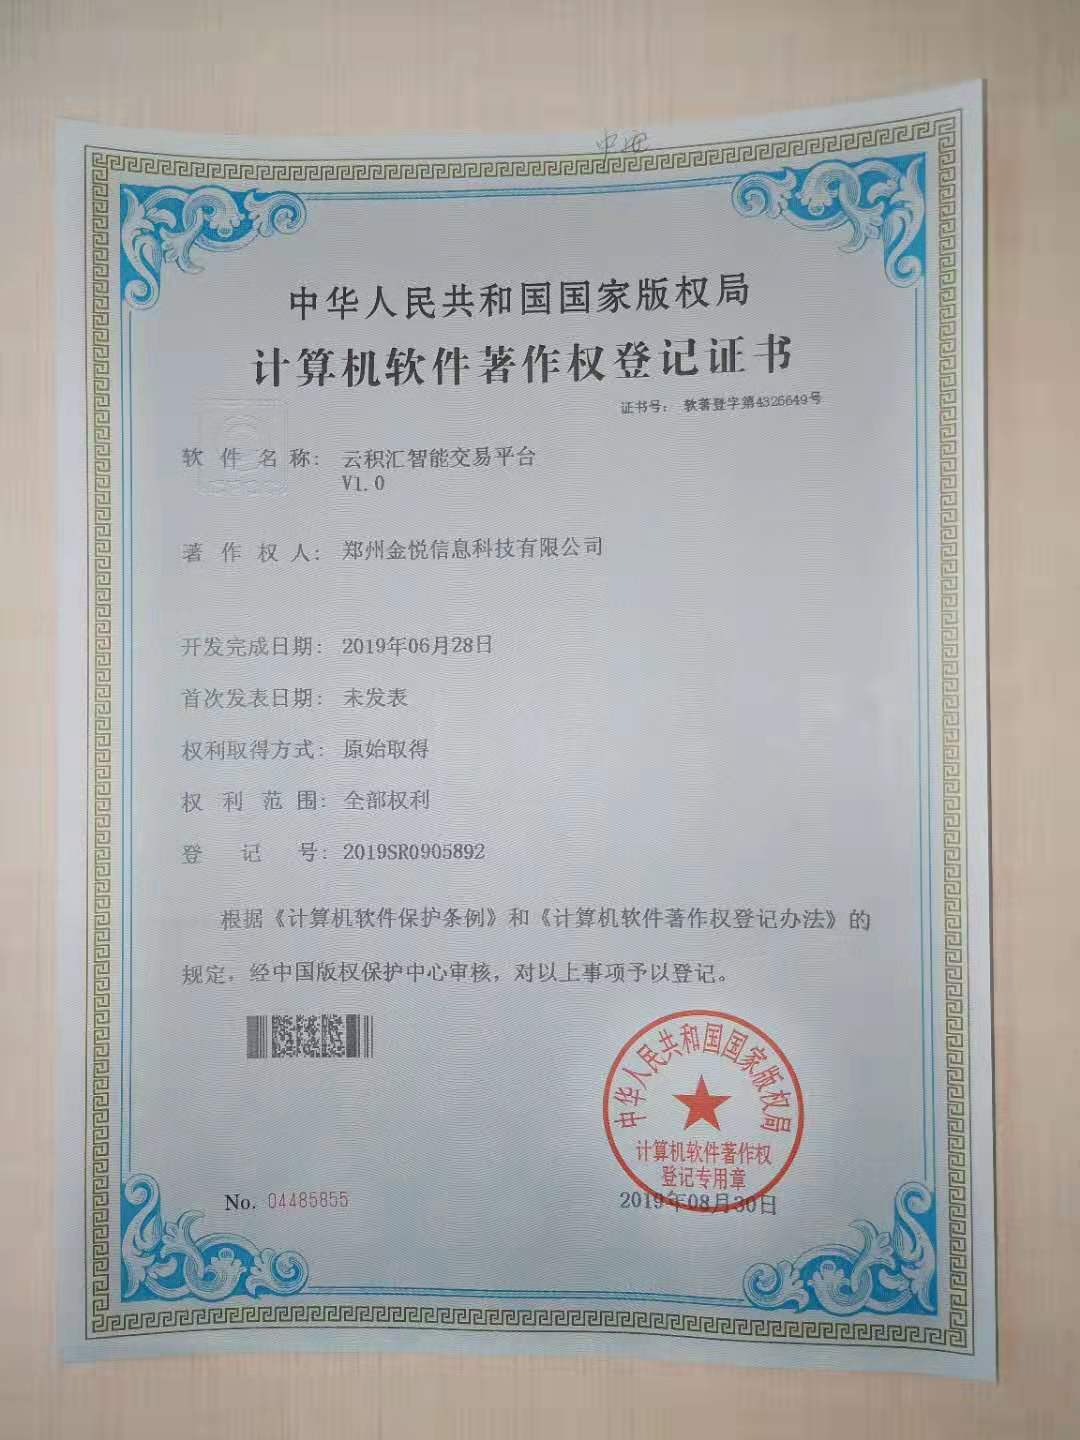 郑州金悦科技喜获三项知识产权登记认证